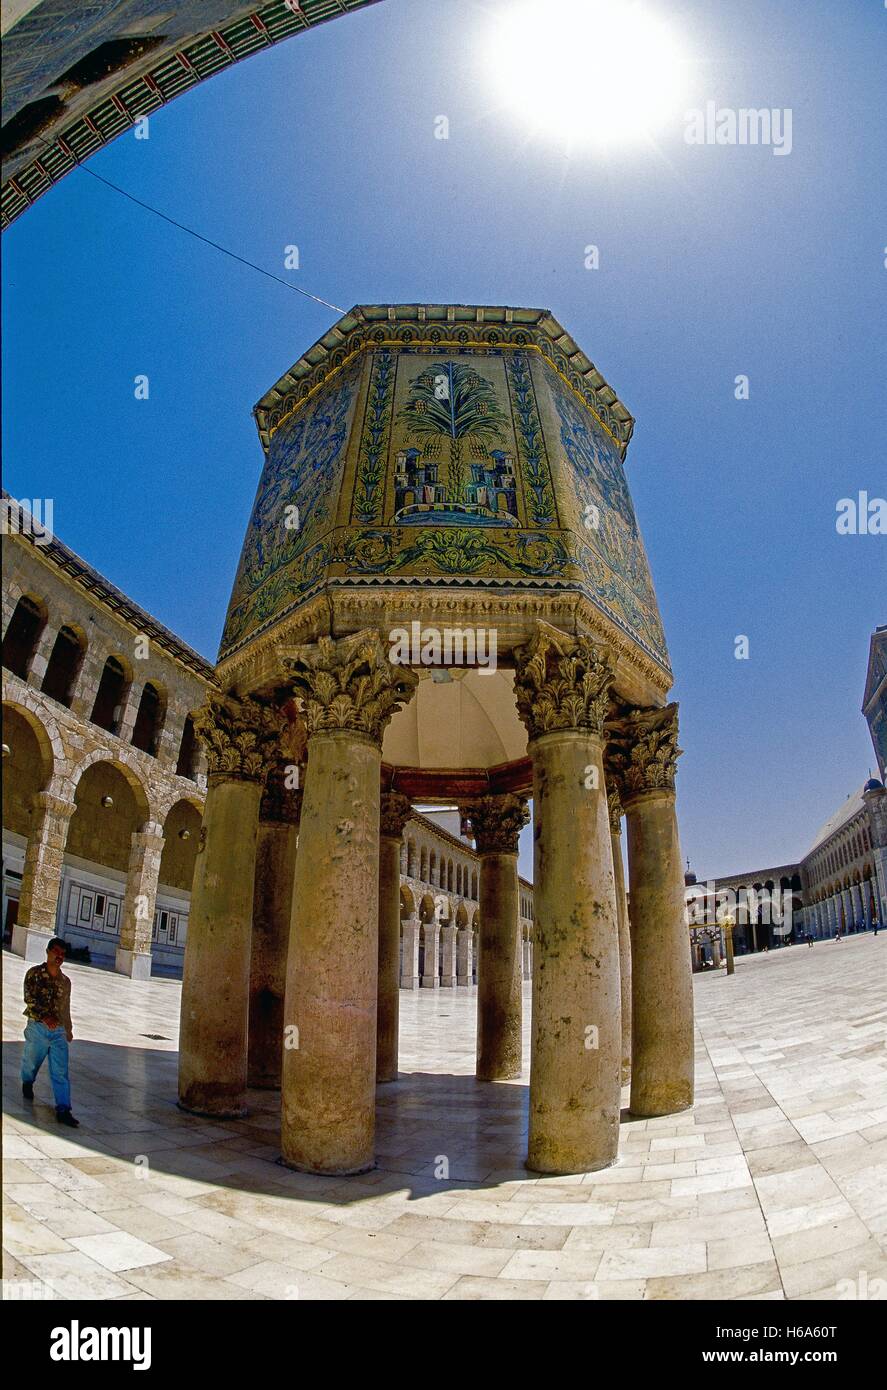 Il mosaico-laden tesoro della moschea degli omayyä di Damasco in fish-eye prospettiva. Catturate su 11.07.2000. Moschea degli omayyä di Damasco è uno dei più antichi al mondo. È stato costruito nello stile di una antica Basilica e in pre-islamico volte è stata la cattedrale dove Giovanni Battista è stata dedicata. Secondo record tradizionali, la sua testa è conservato in un santuario. La Moschea contiene un ampio cortile con tre piccoli side-edifici; l'orologio-house, la Casa Fontana e il famoso pillared tesoro, dove secondo la leggenda i tesori di stato sono state precedentemente memorizzate. Foto: Matthias Foto Stock